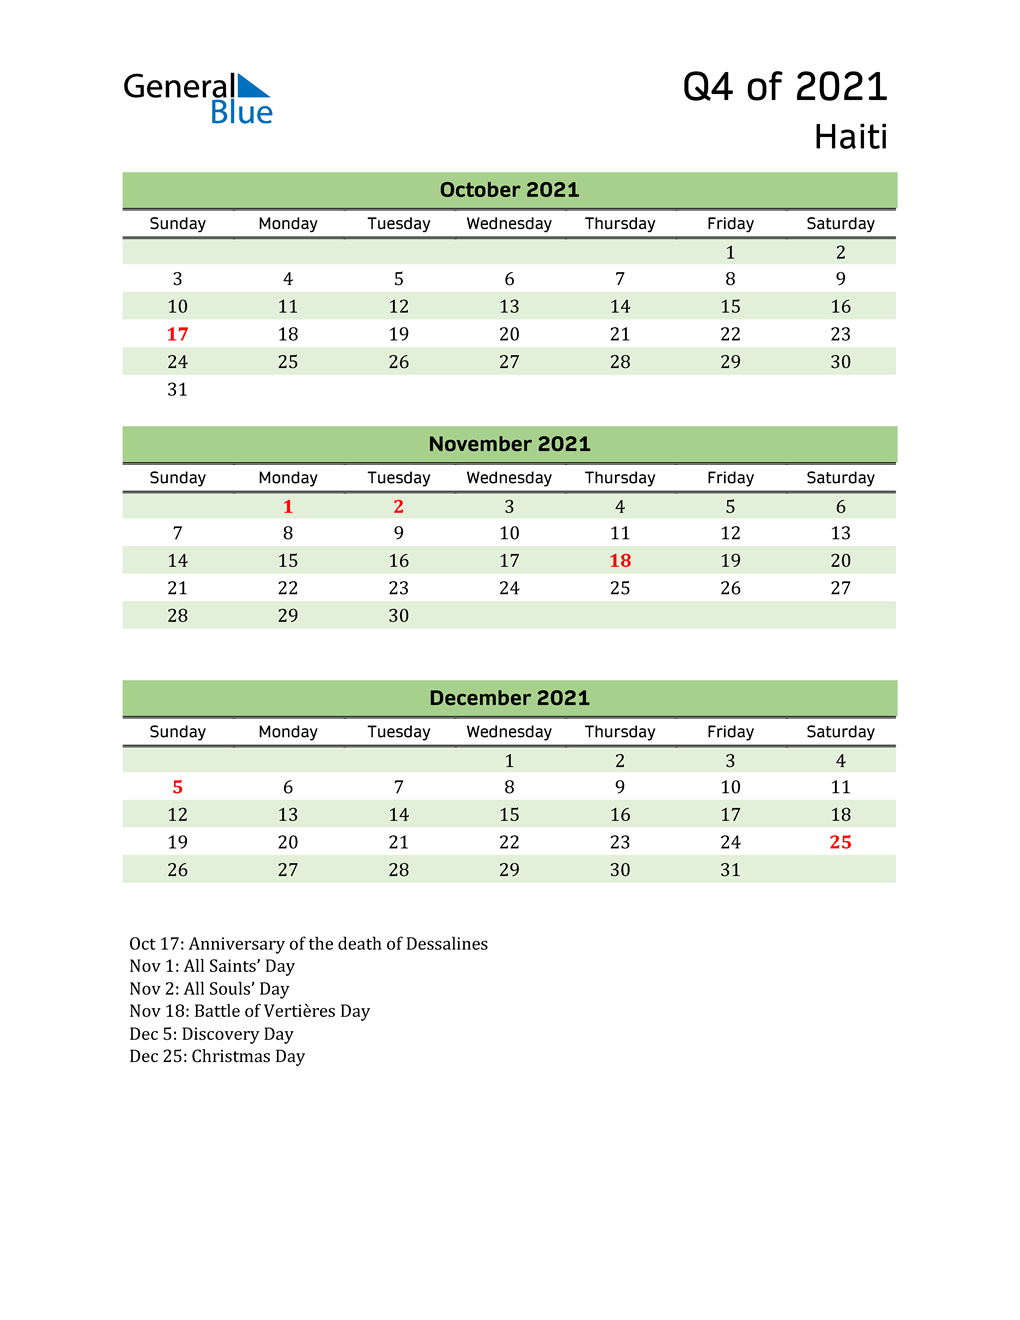  Quarterly Calendar 2021 with Haiti Holidays 